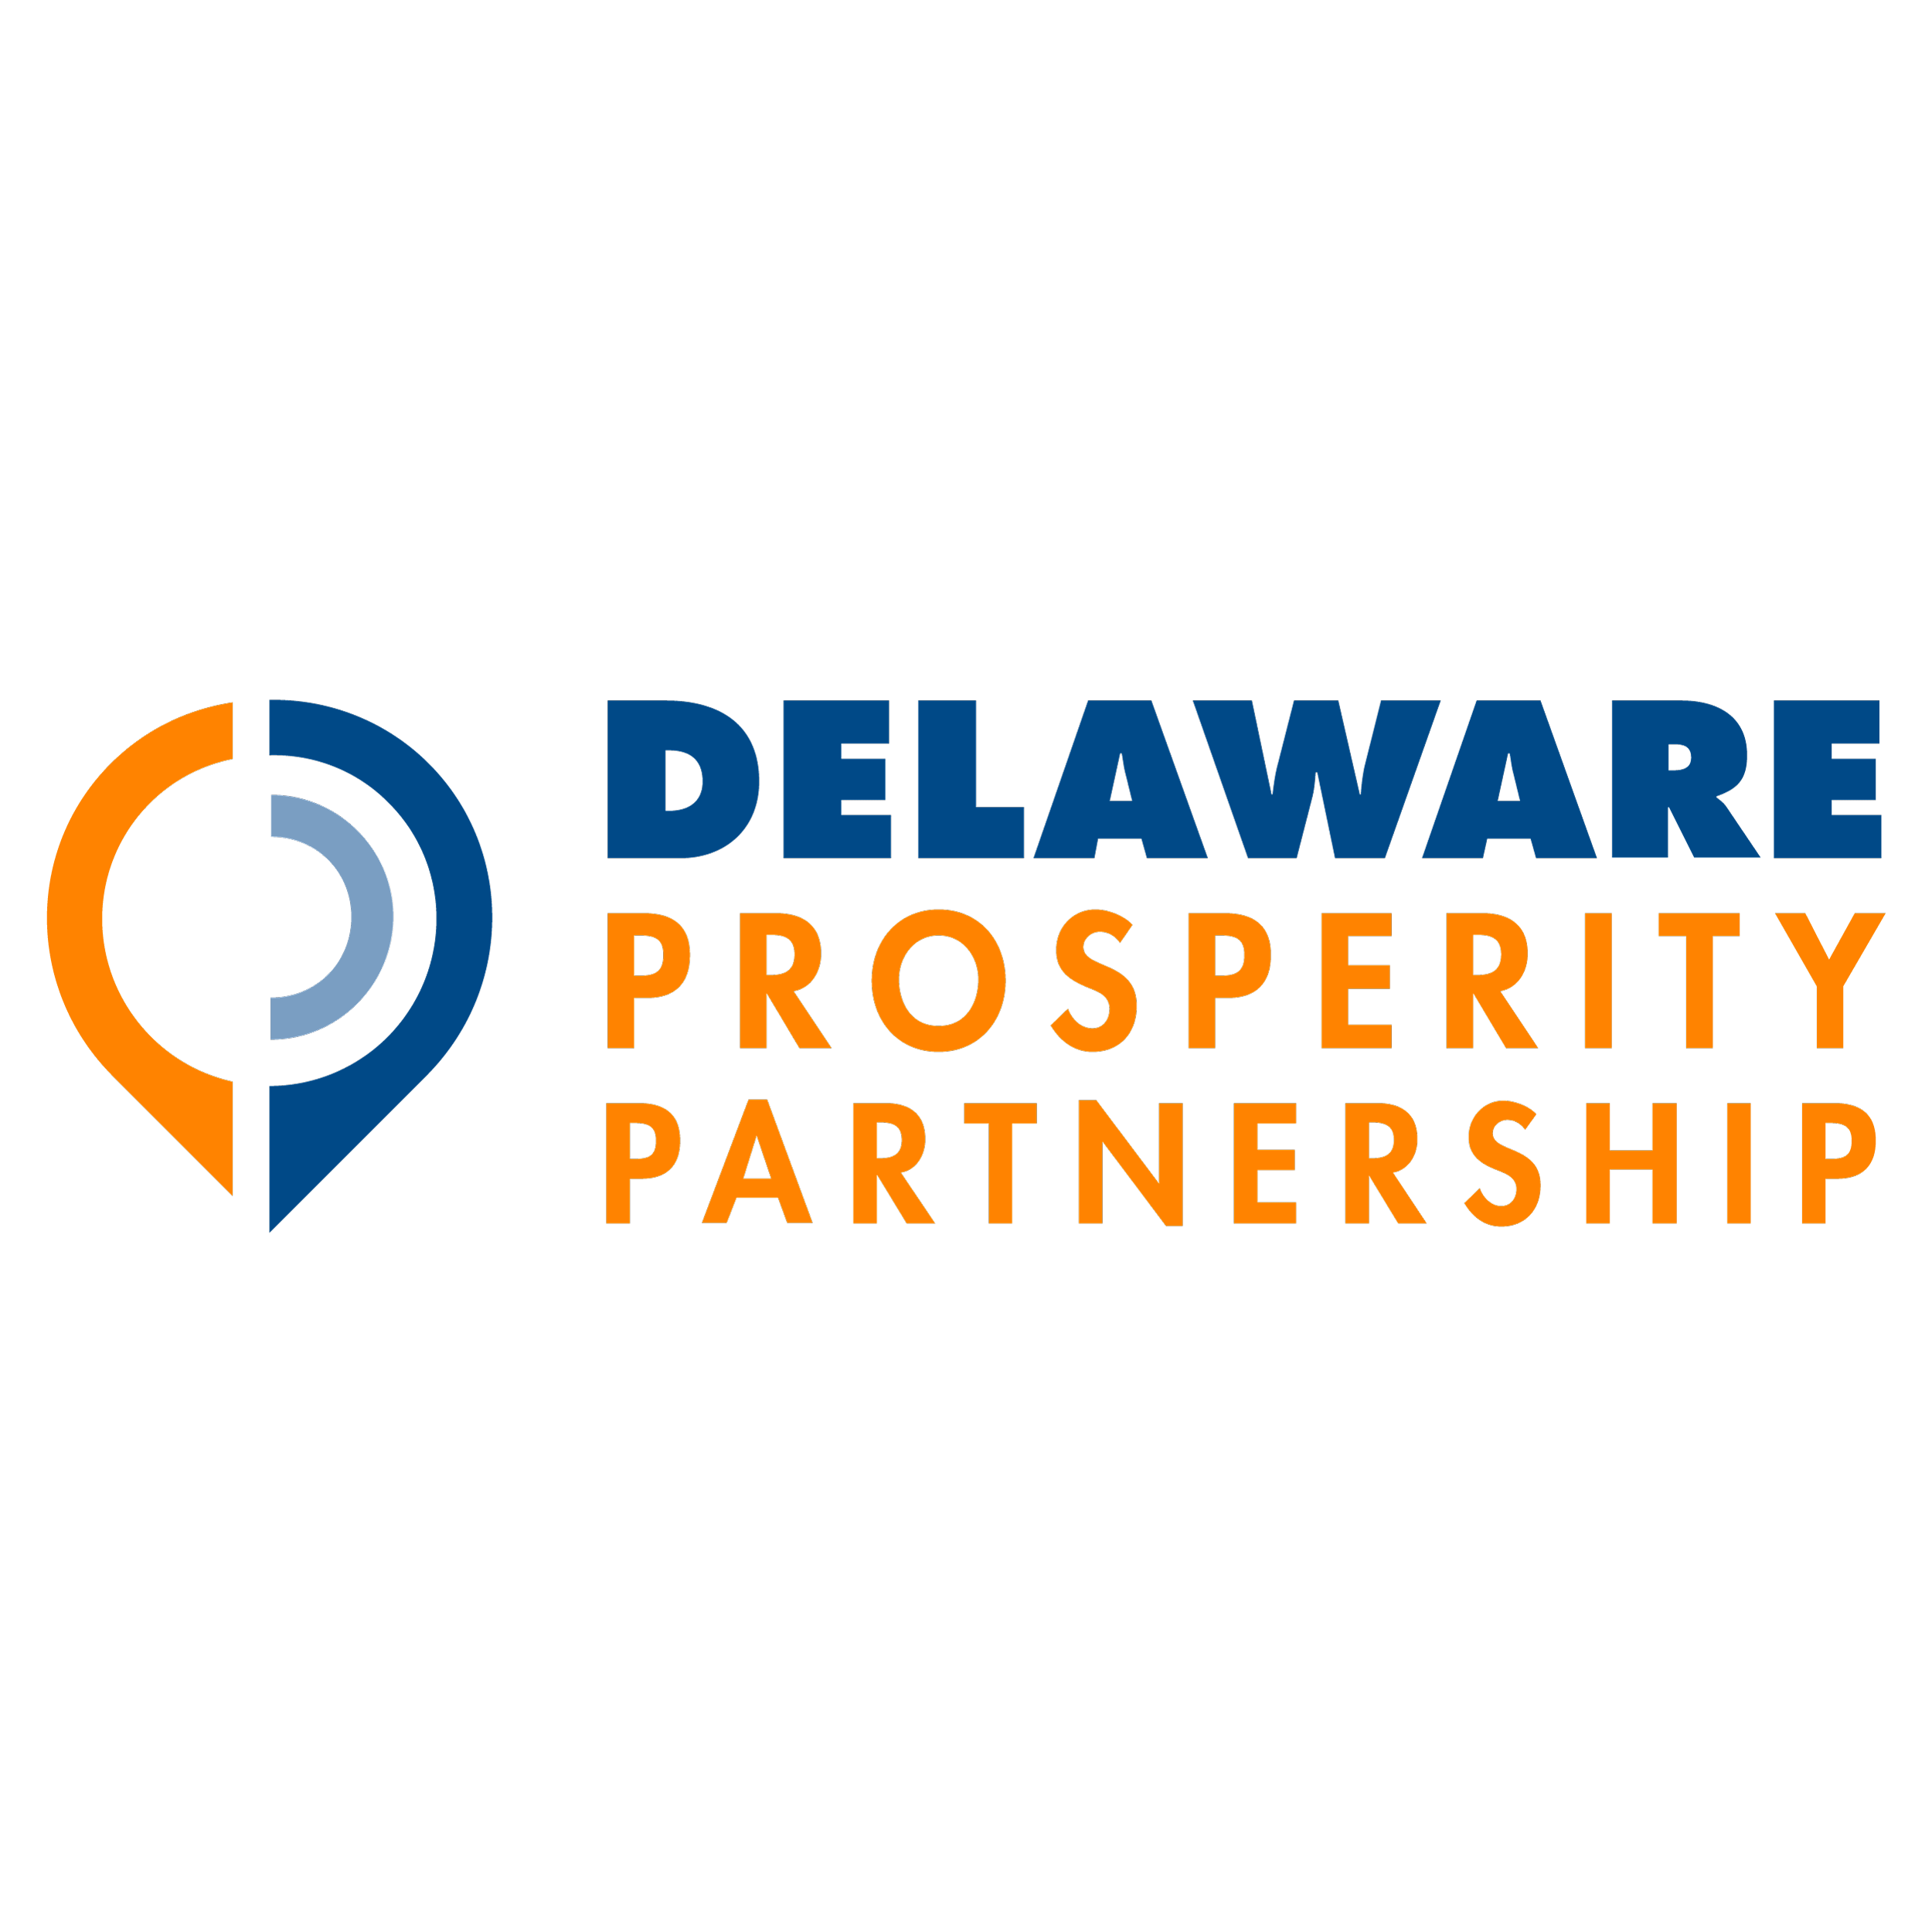 Delaware Logo - Business in Delaware | Delaware Prosperity Partnership